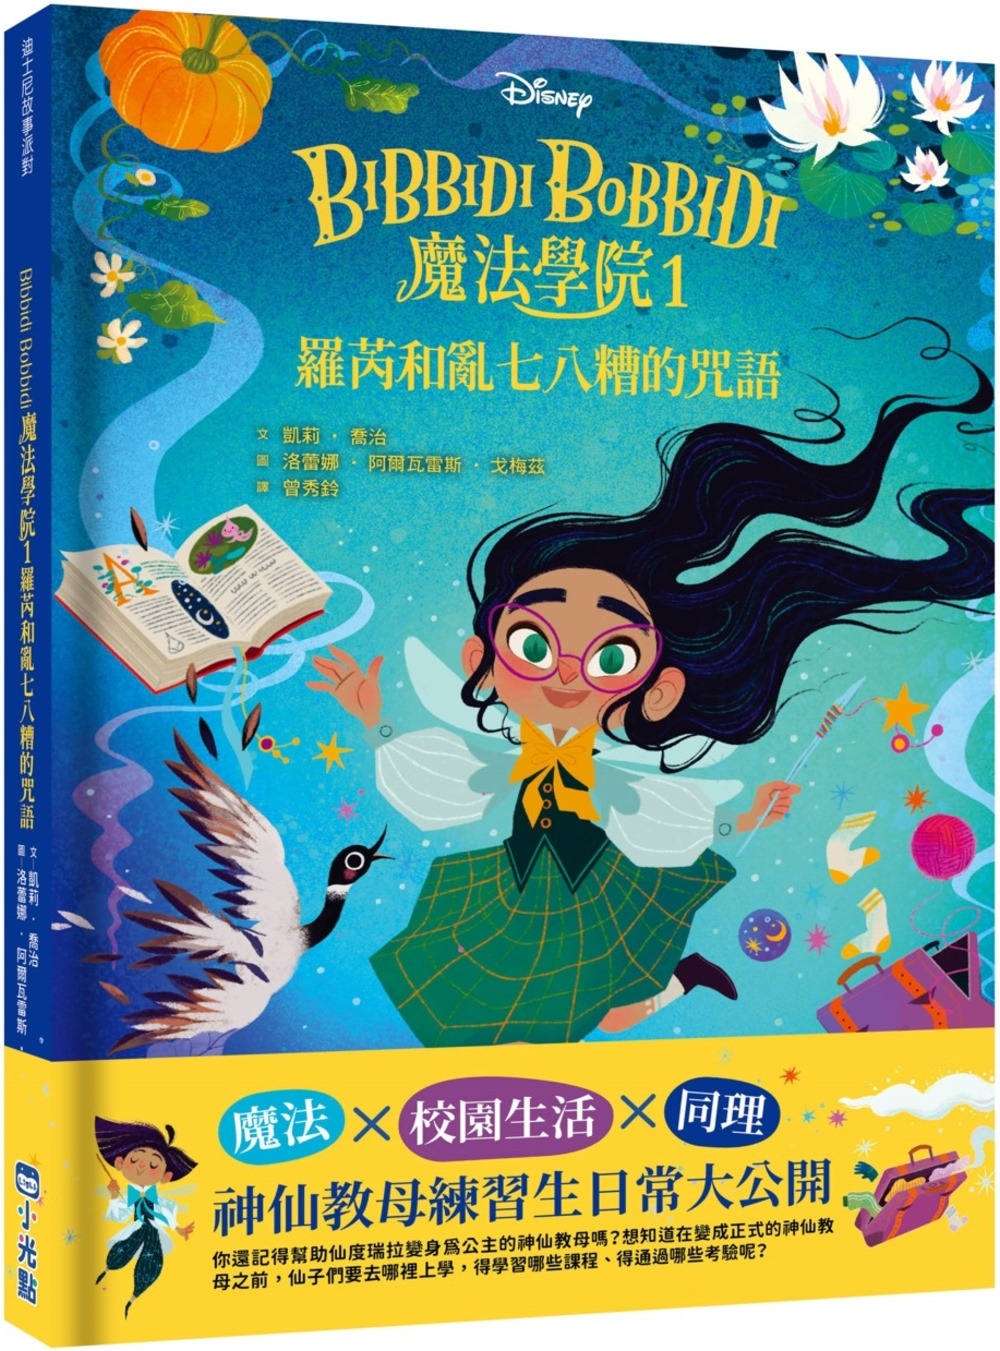 【迪士尼故事派對】Bibbidi Bobbidi 魔法學院1...